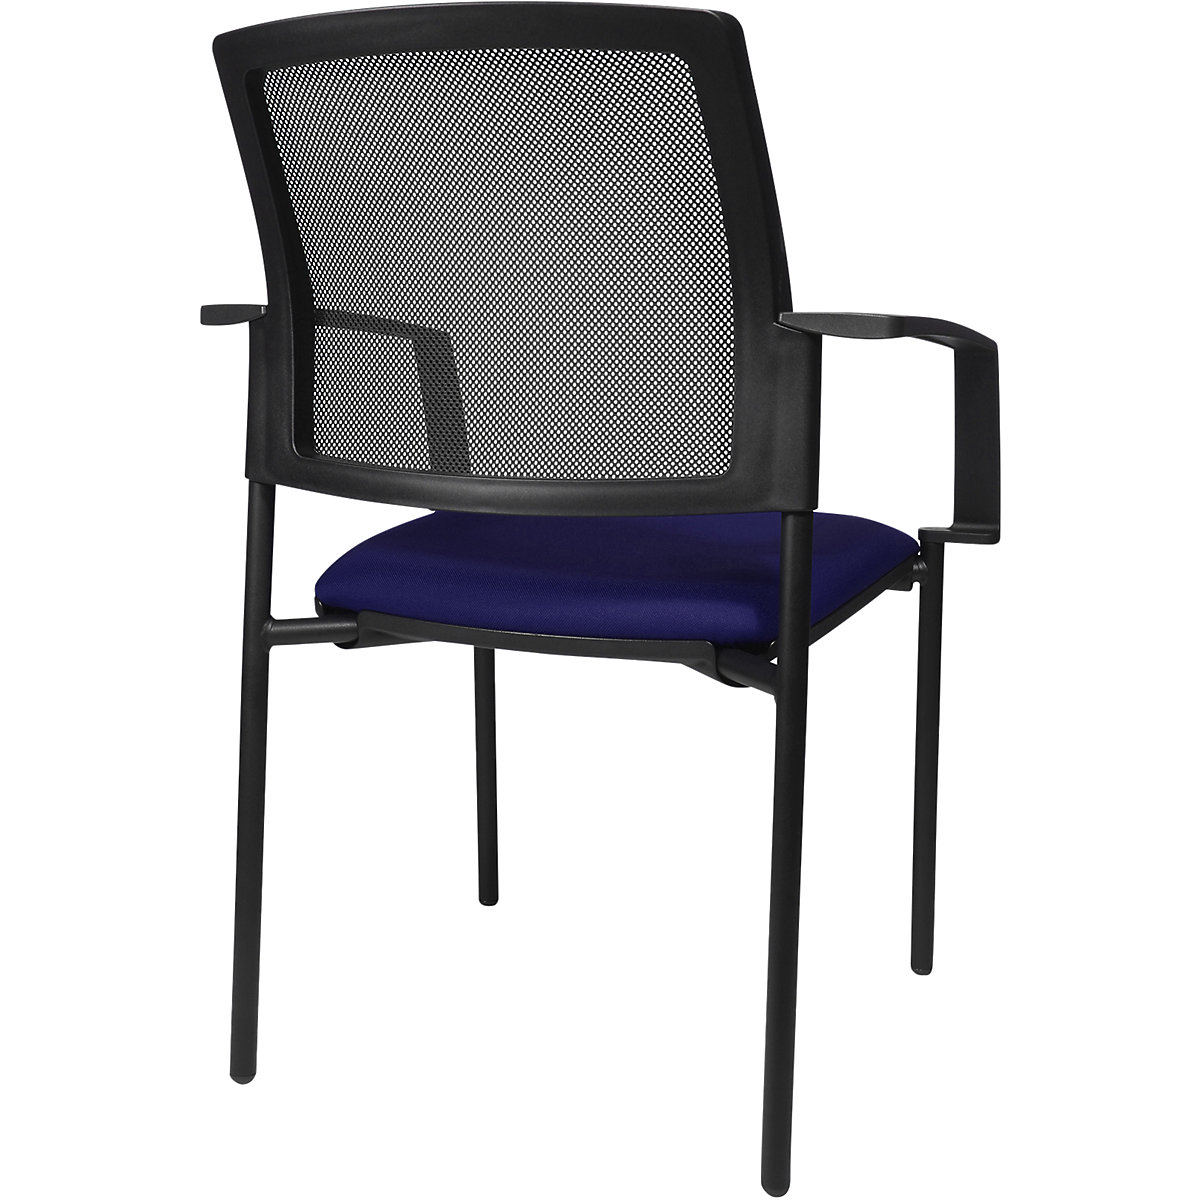 Složiva stolica s mrežastim naslonom – Topstar (Prikaz proizvoda 15)